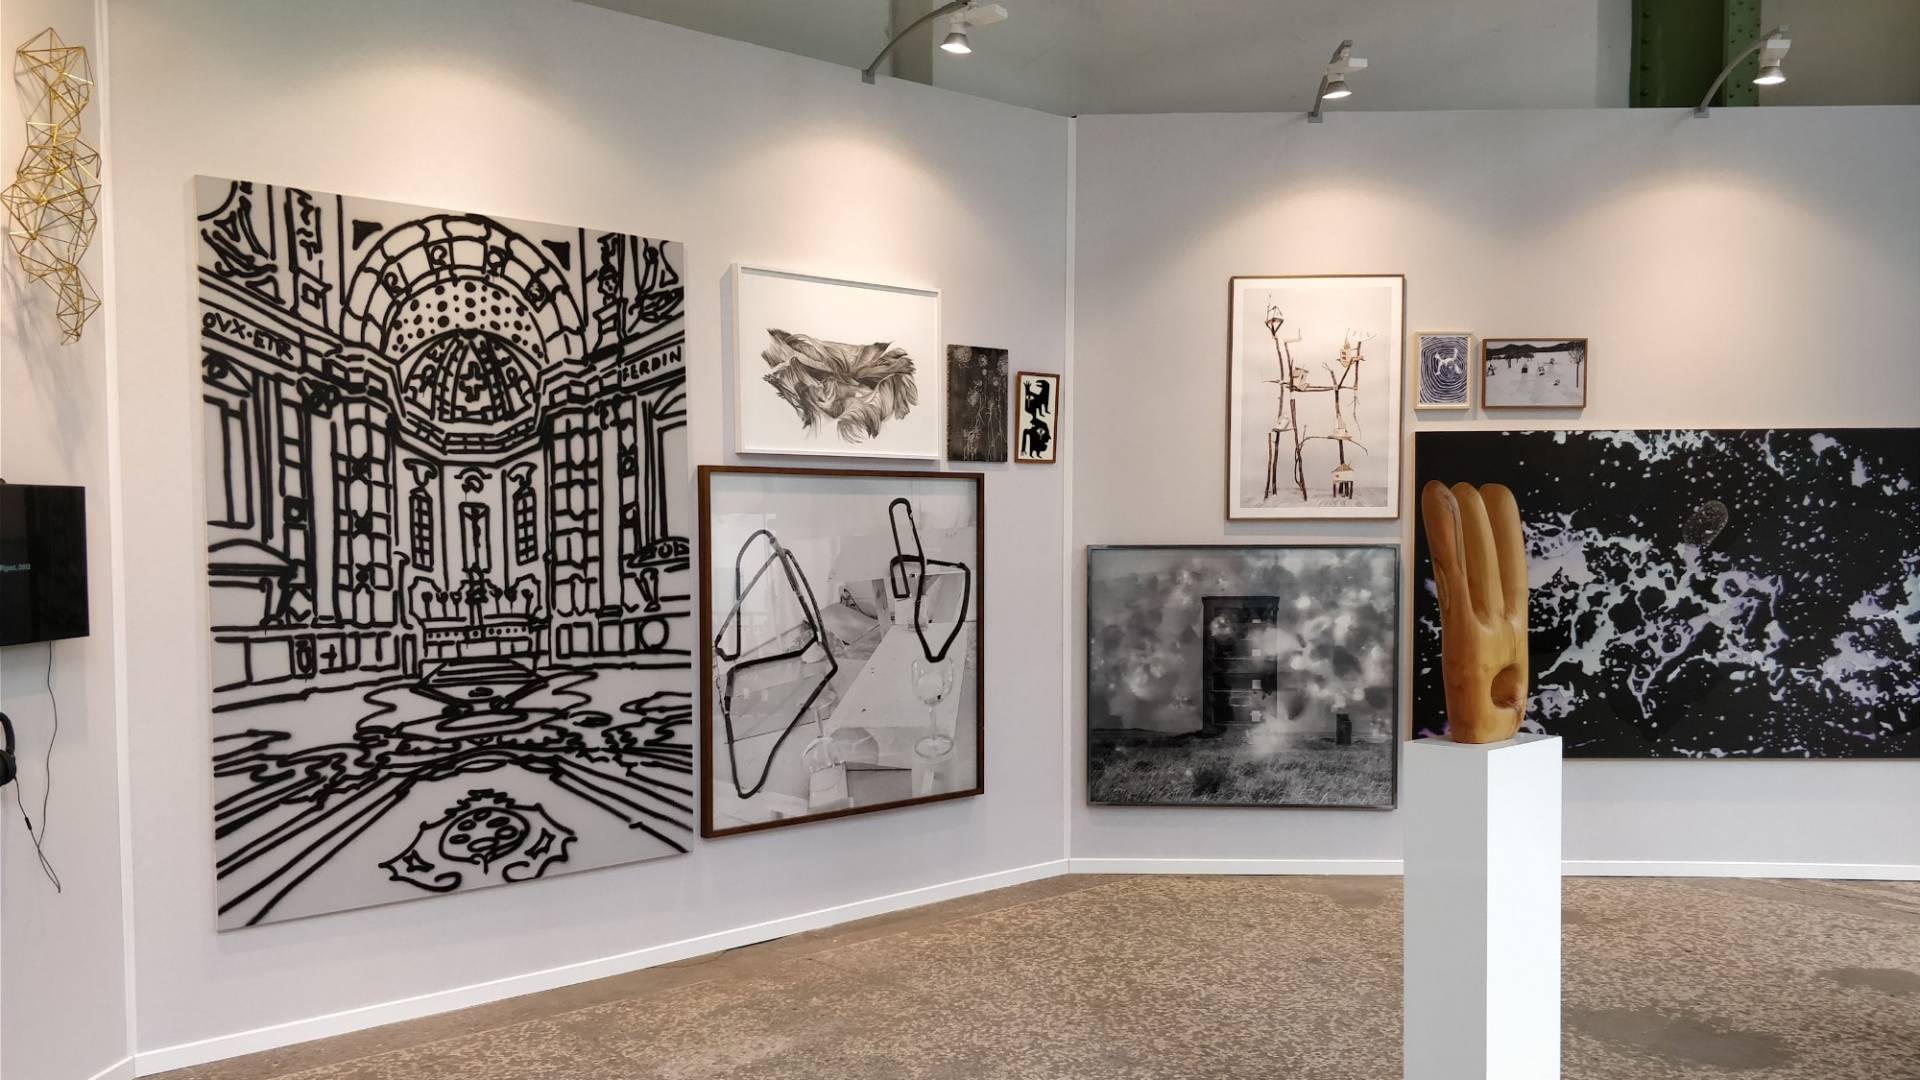 Nella foto si vedono diverse opere della collezione d’arte Helvetia, che sono esposte alla Art Paris Art Fair 2018.